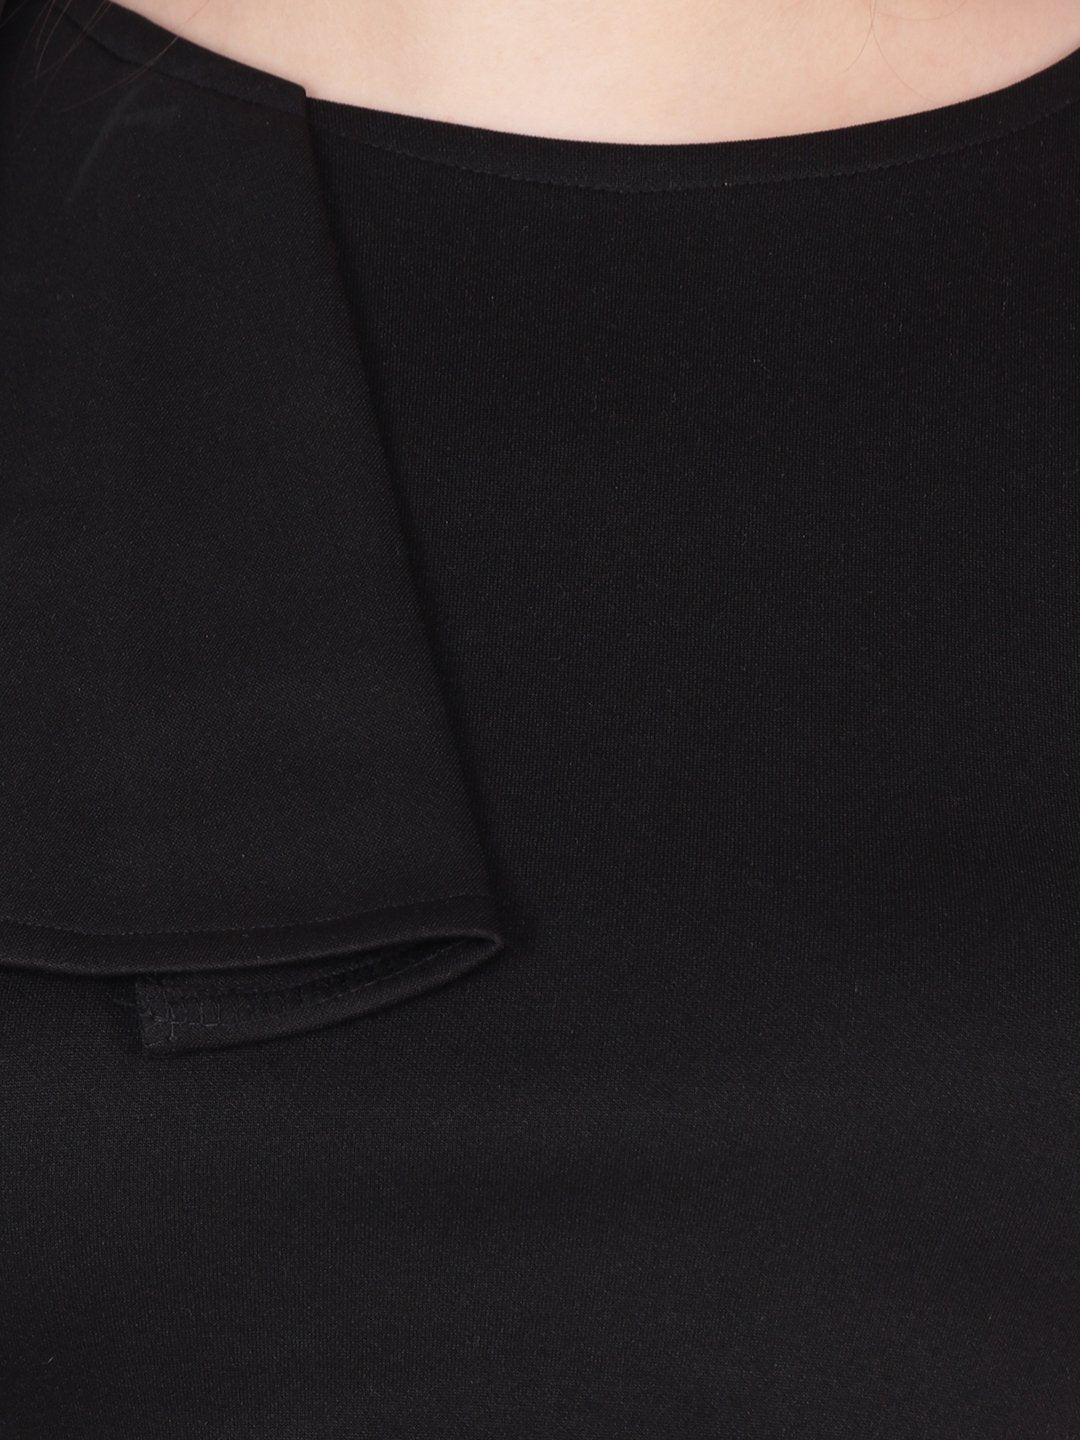 SCORPIUS Black cut sleeve Crop top